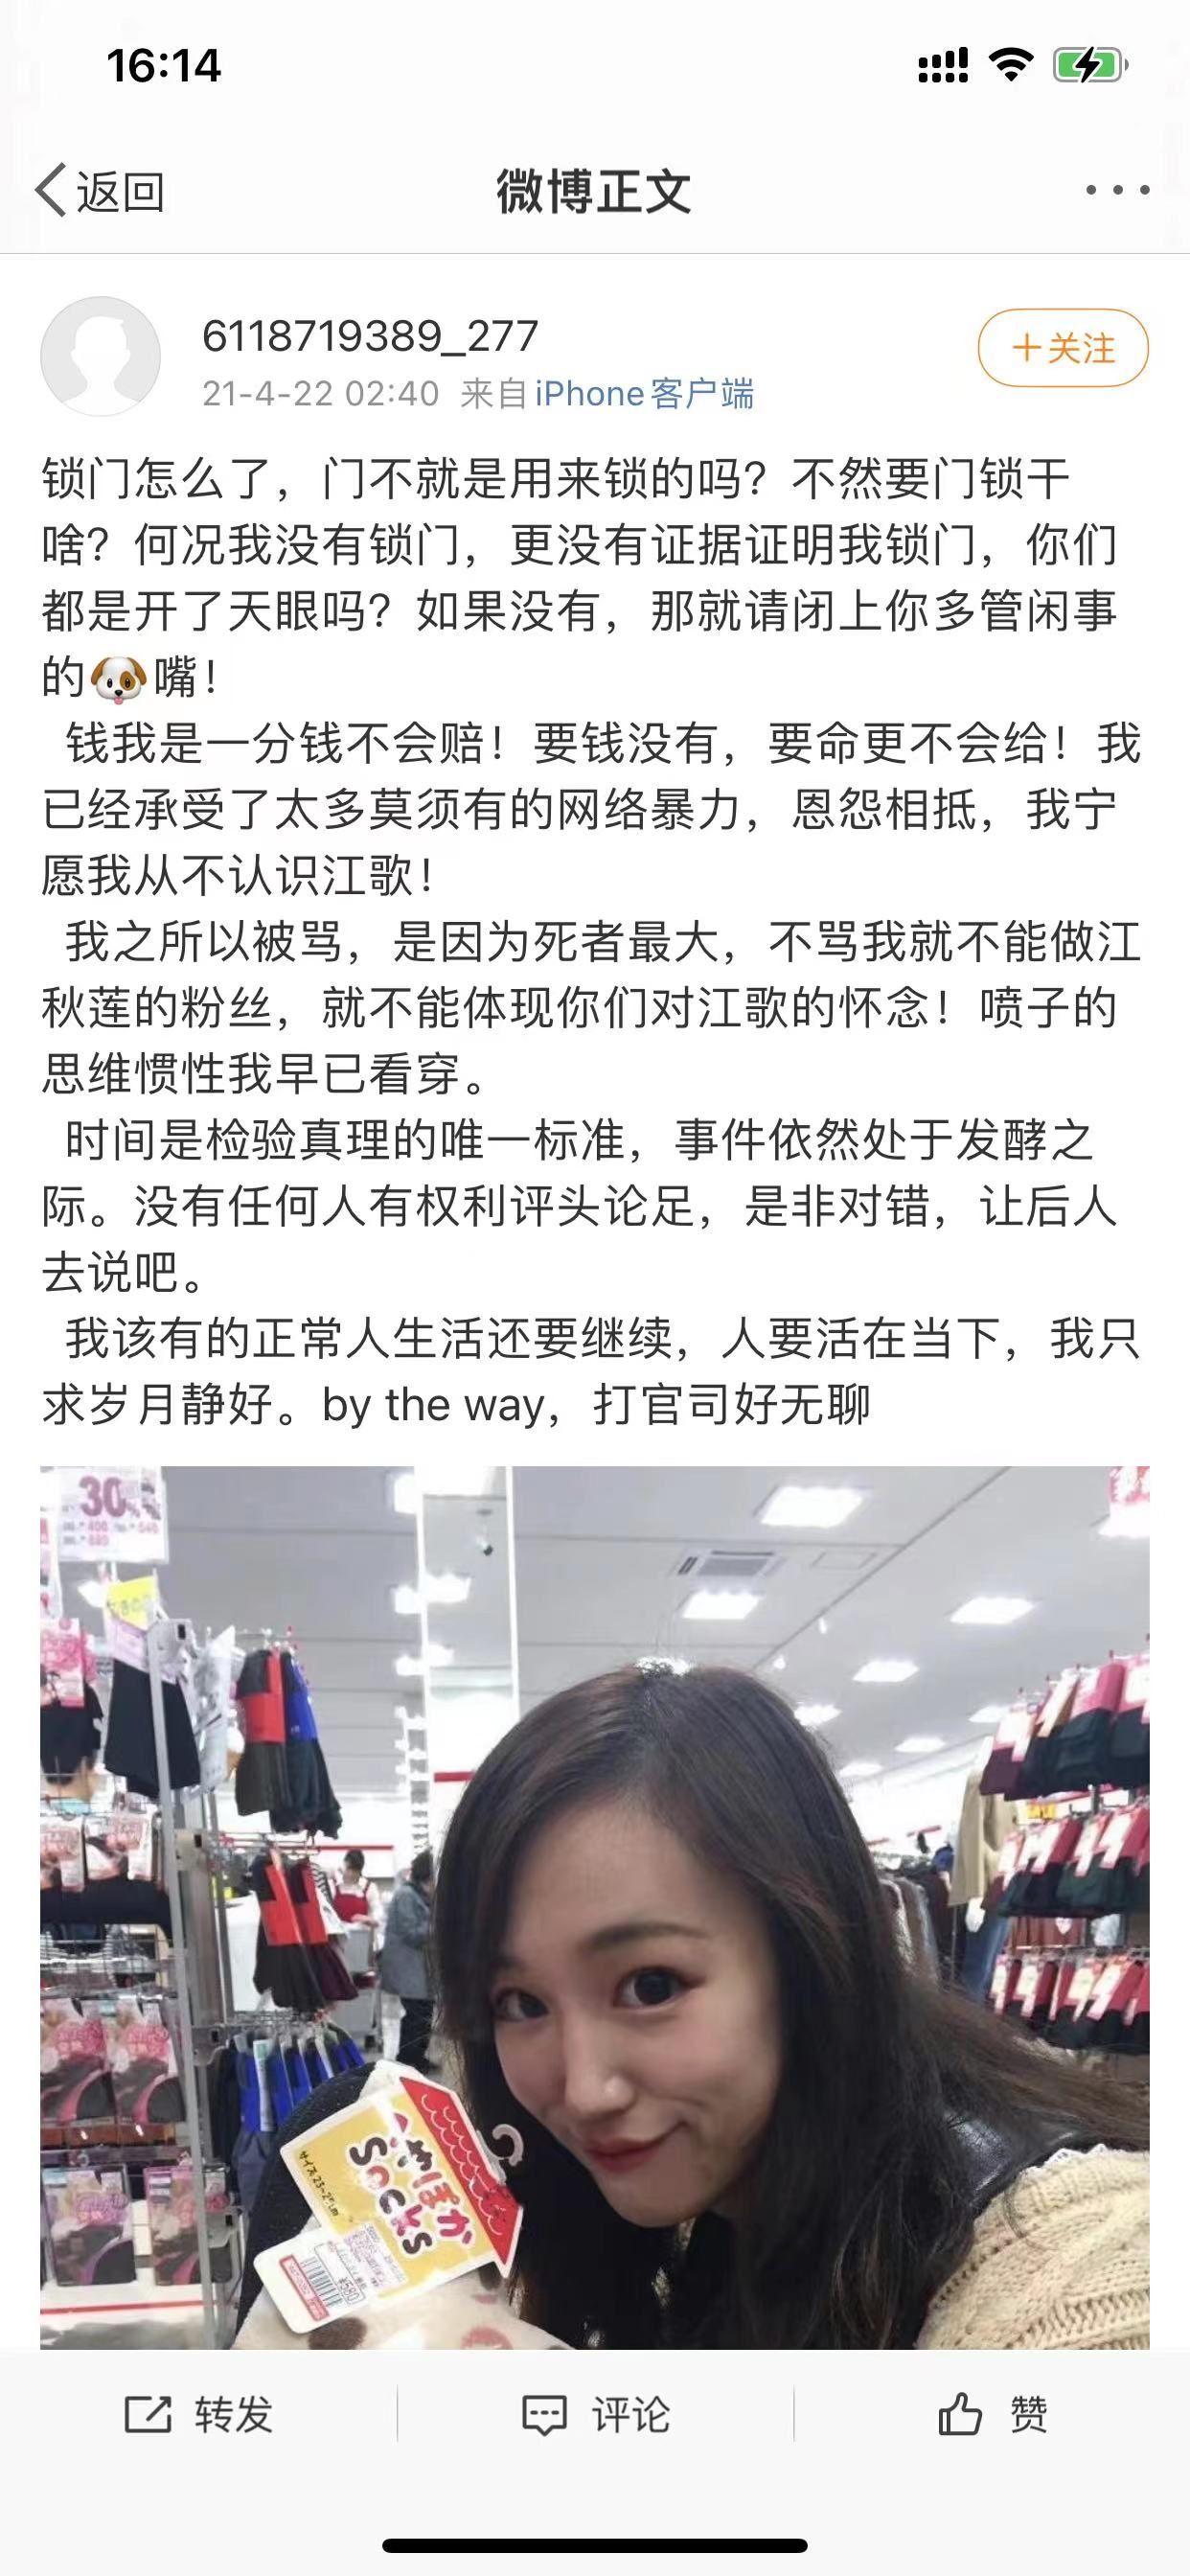 「江歌案」当事人刘鑫称「一直避免自己成为『刘学州』 」,如何评价她